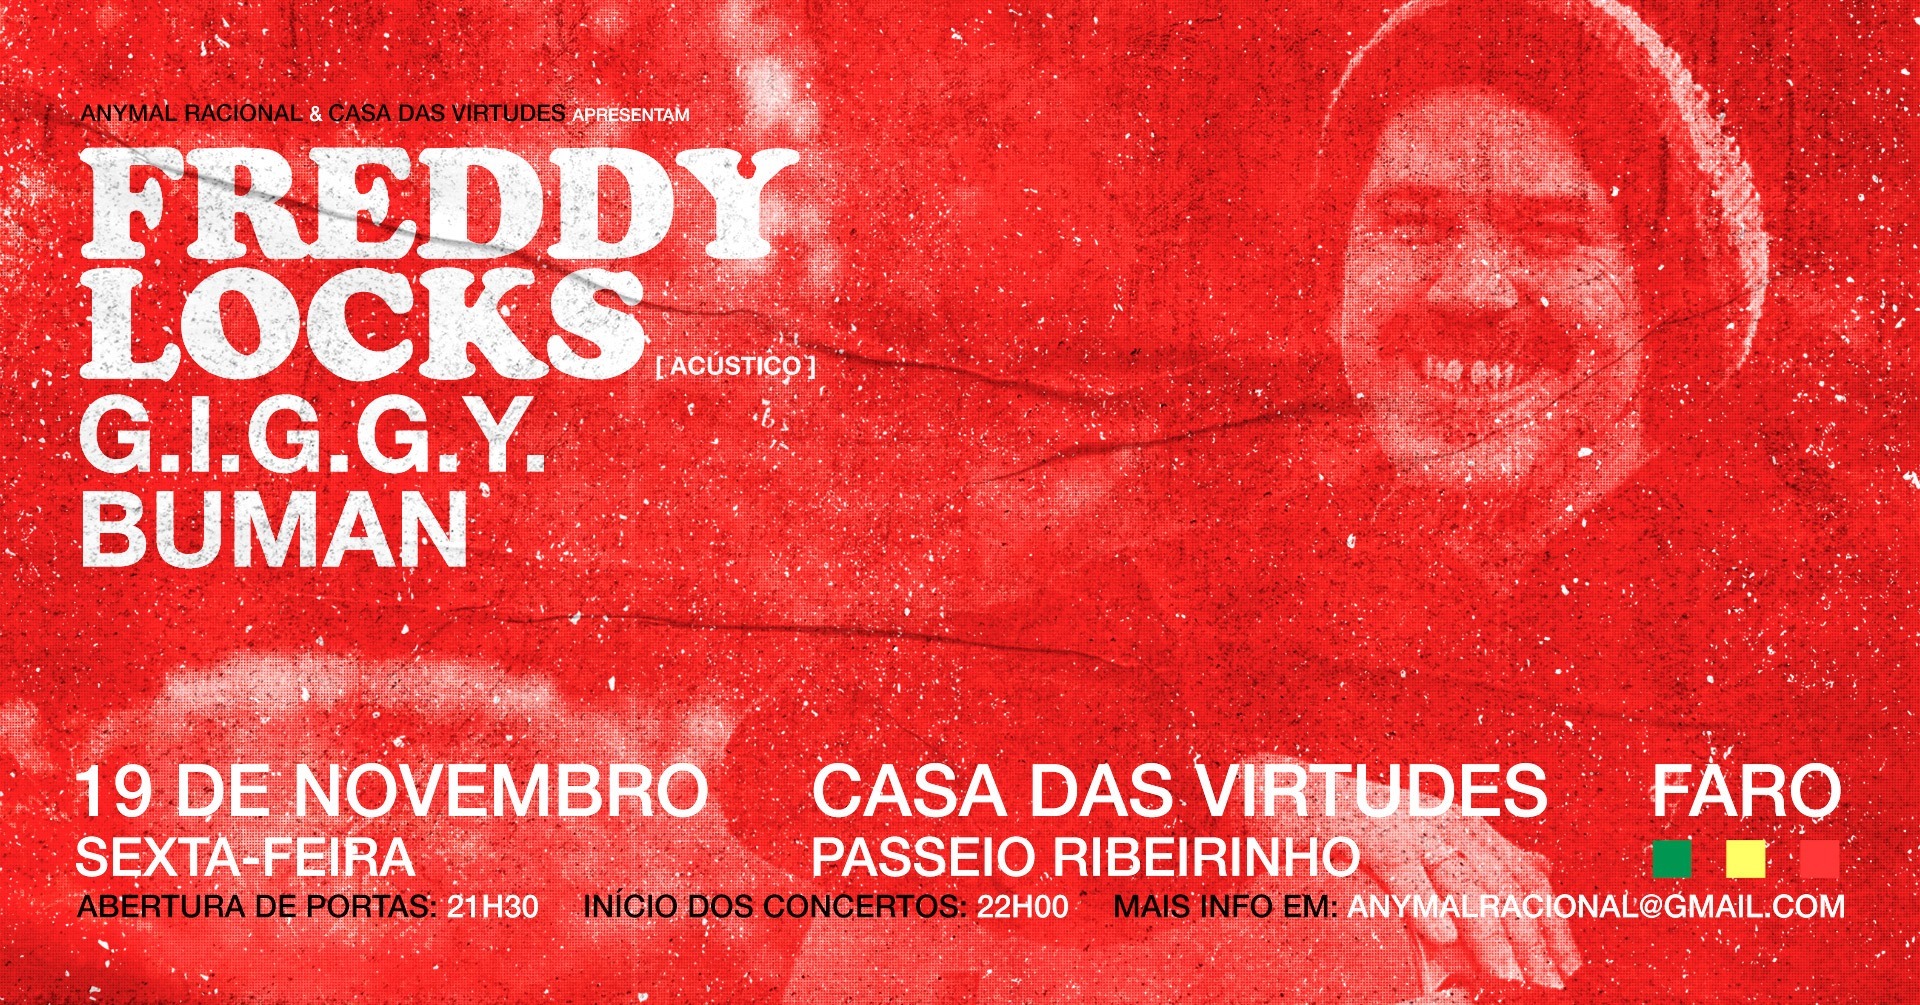 FREDDY LOCKS {acústico} + G.I.G.G.Y. + BUMAN | Casa das Virtudes, Faro | 19.11.2021